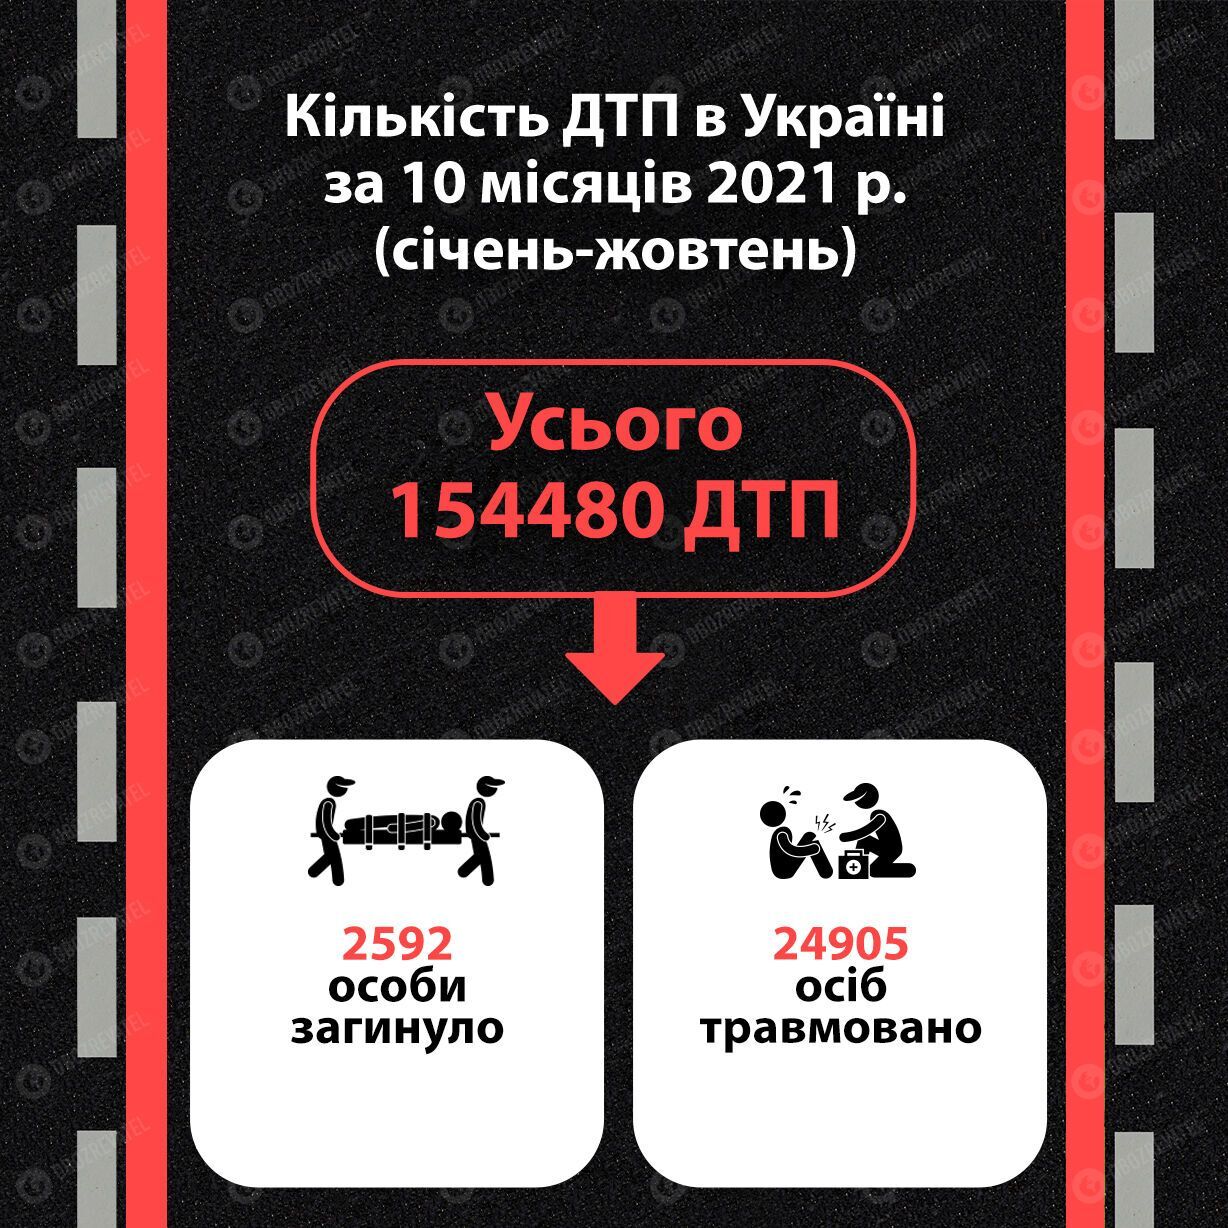 Статистика ДТП в Україні за 10 місяців